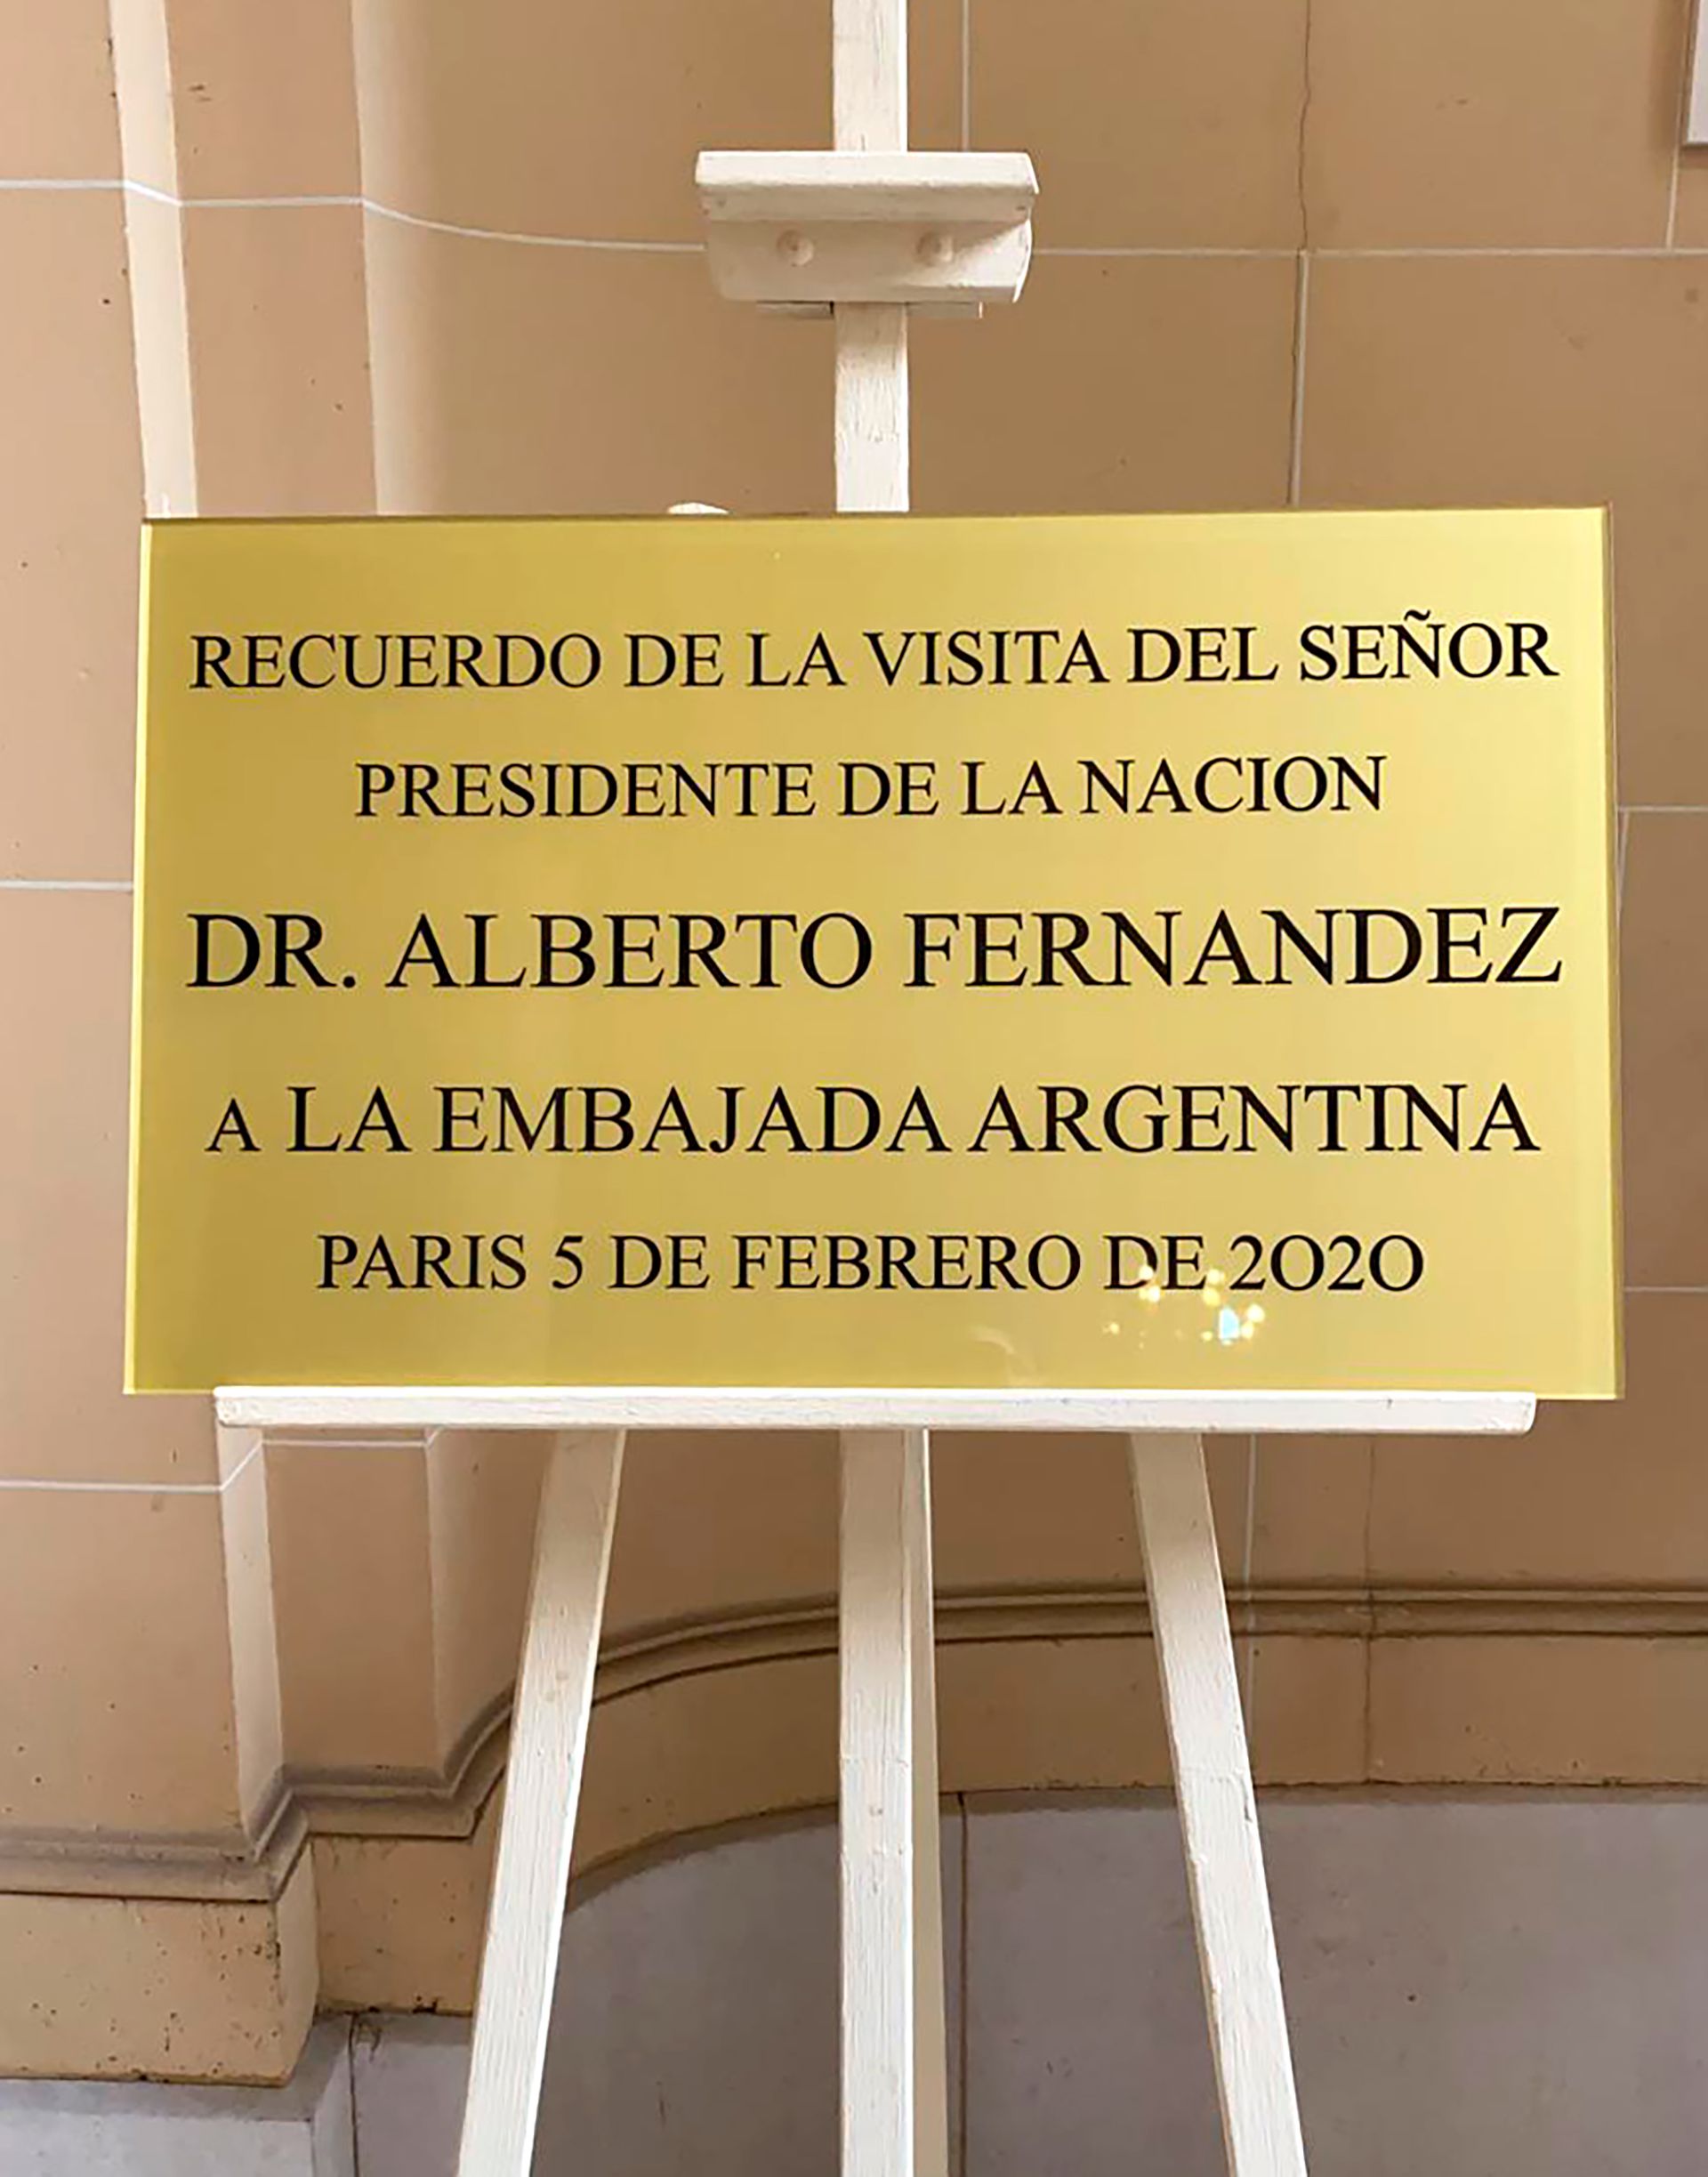 Al igual que Carlos Menem, Alberto Fernández tendrá su placa en la Embajada Argentina en Francia